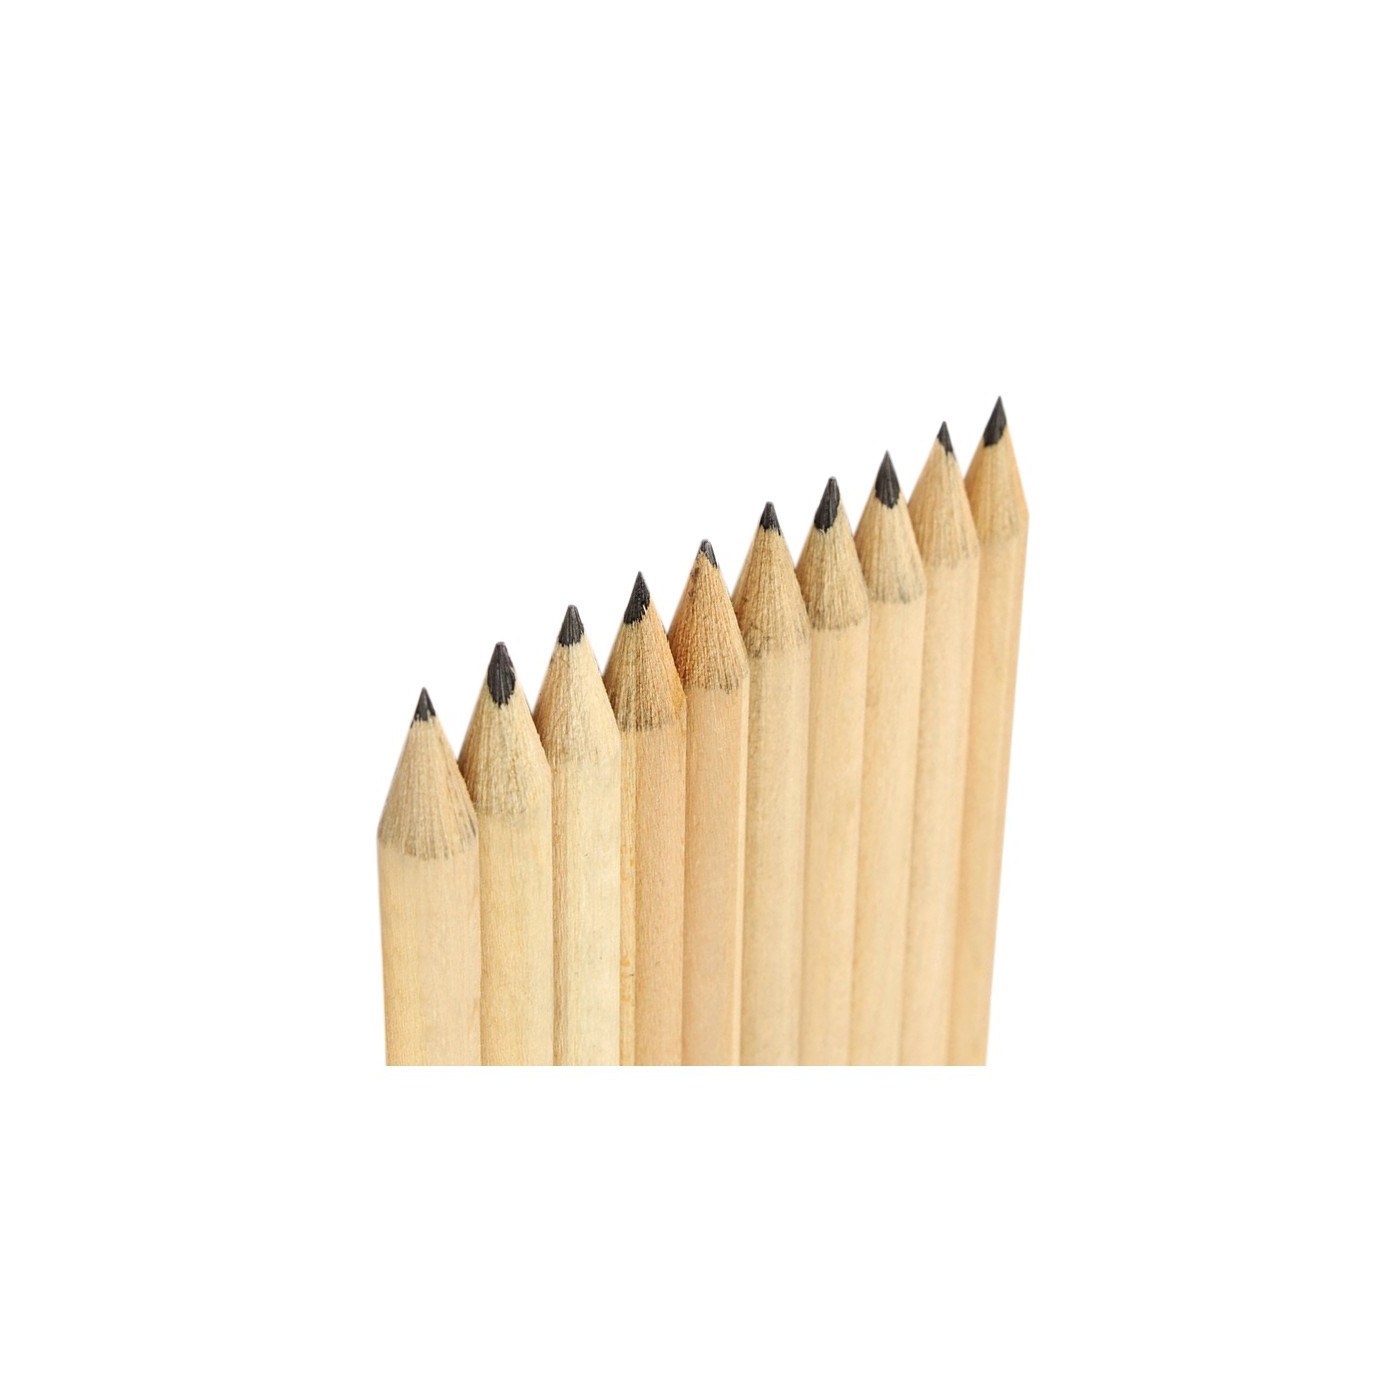 Conjunto de 50 lápis (19 cm de comprimento, tipo 4, com